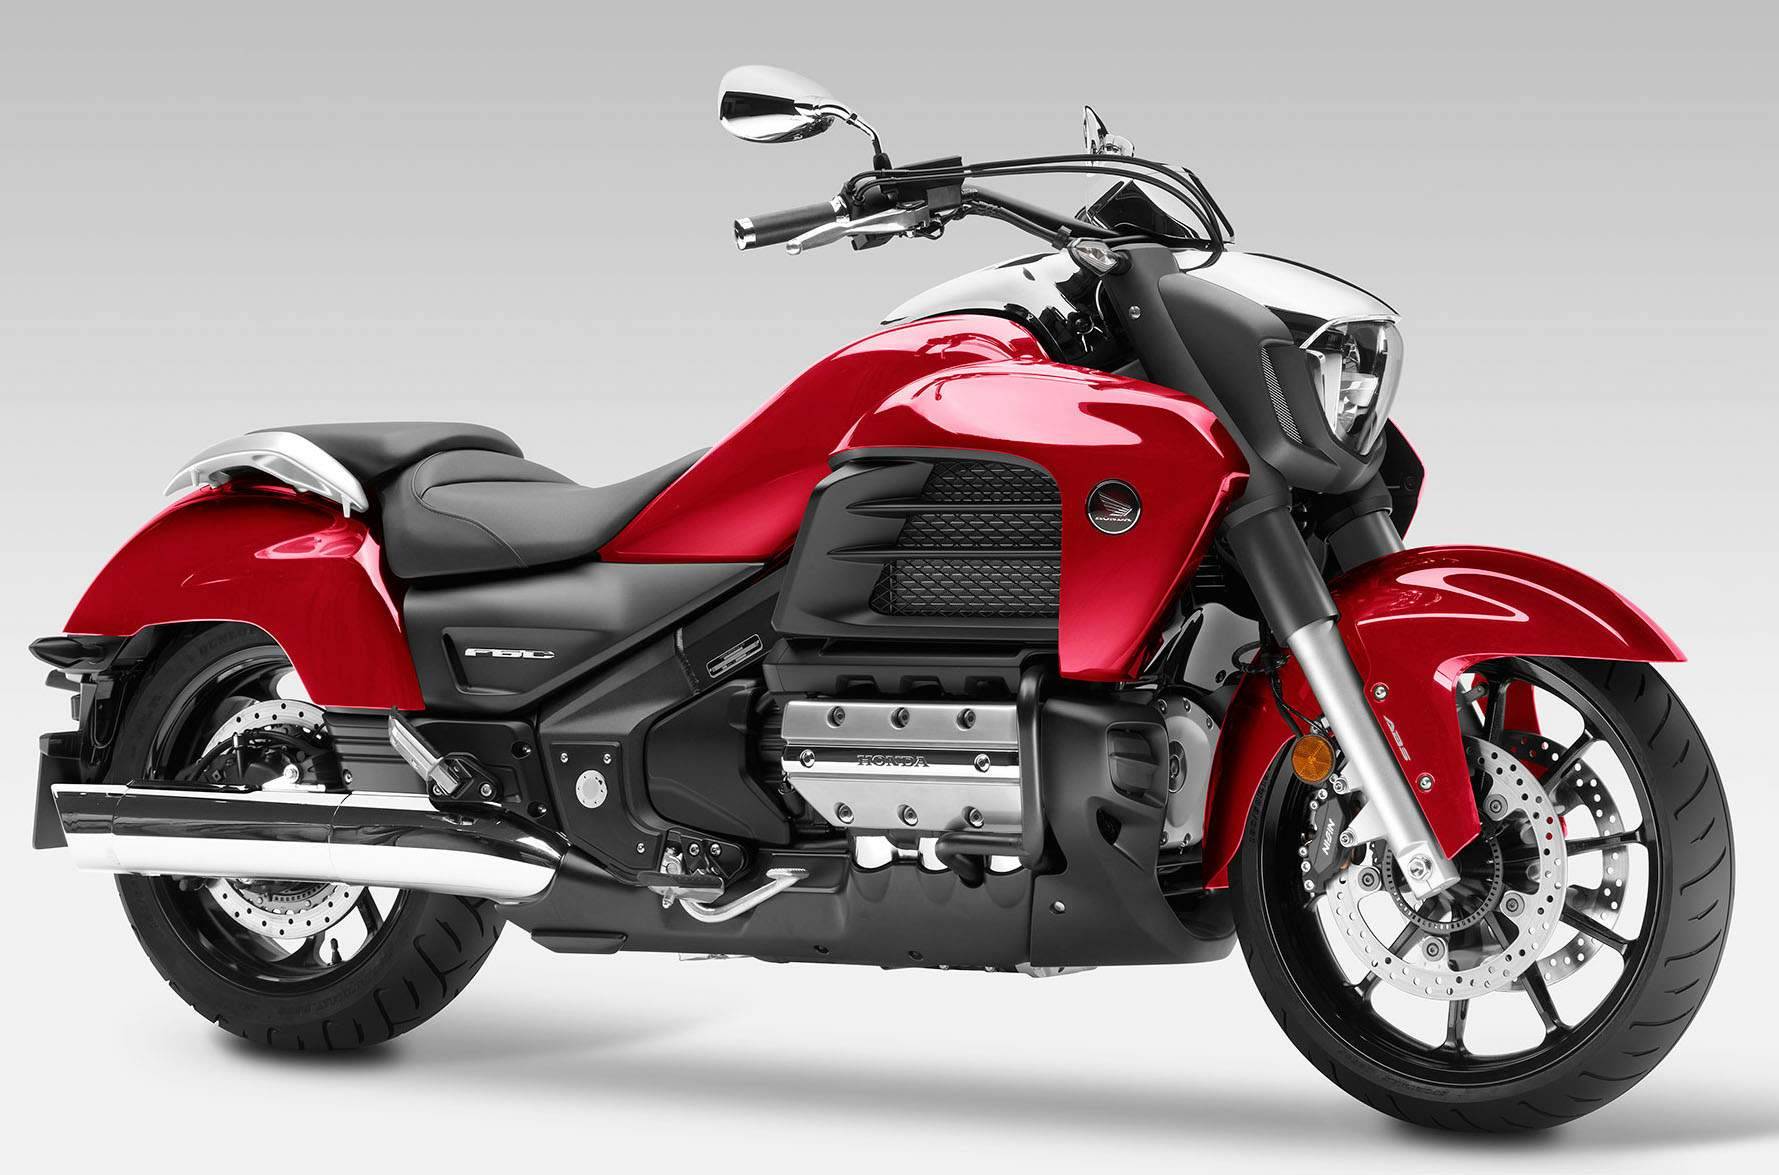 Мотоцикл honda valkyrie (хонда валькирия) - для сильных духом